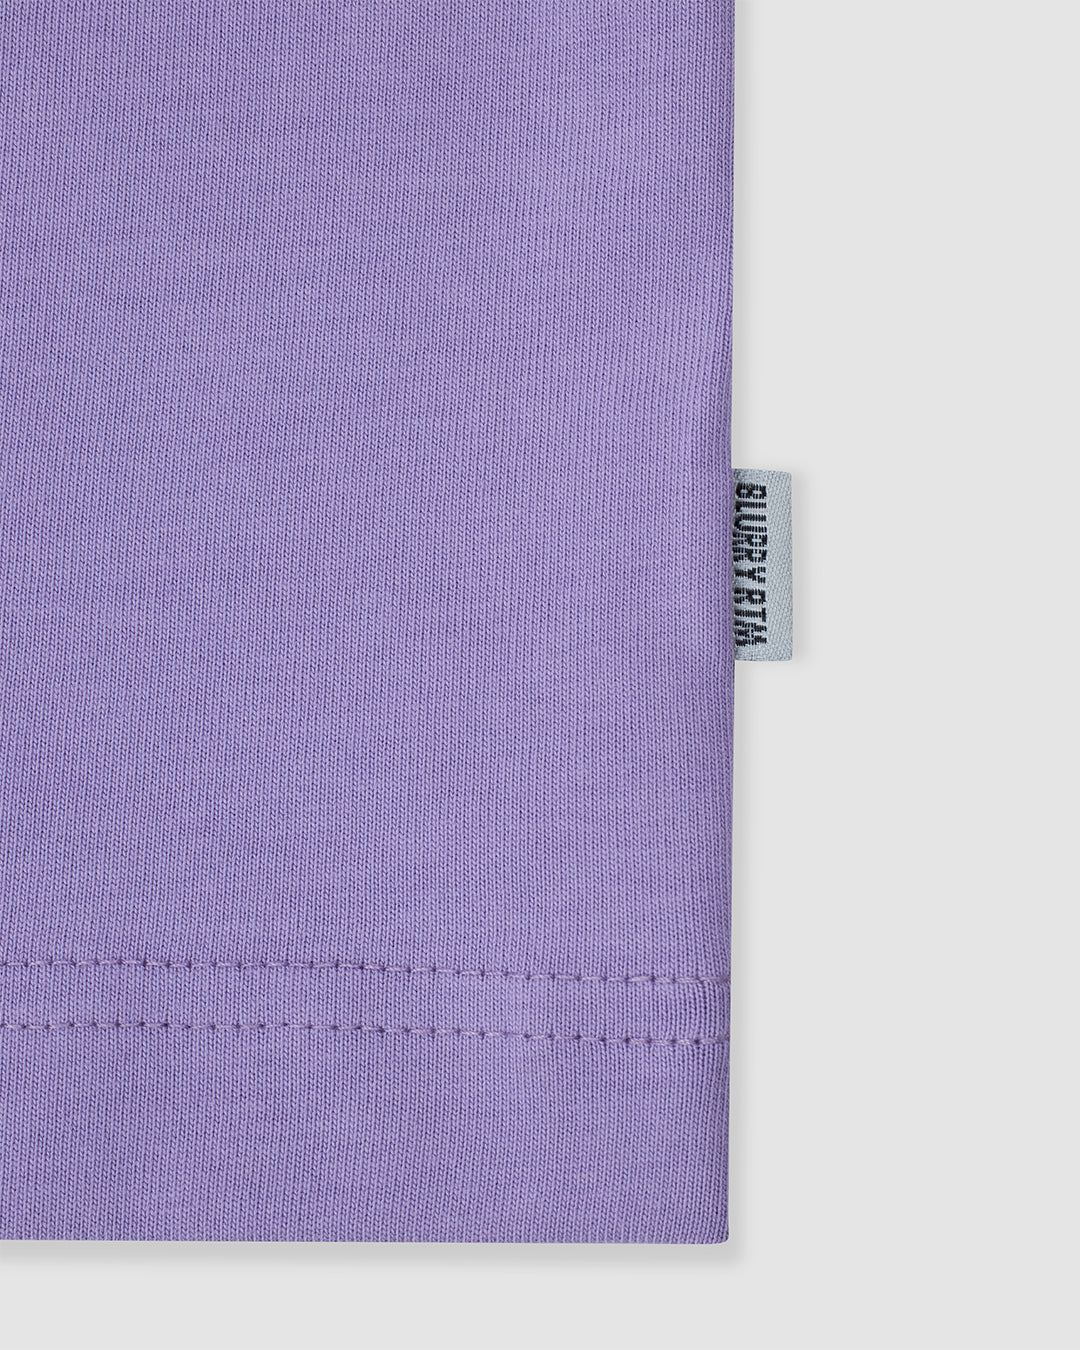 BLURRY Graphic T-Shirt (Lavender Purple/Multicolor)